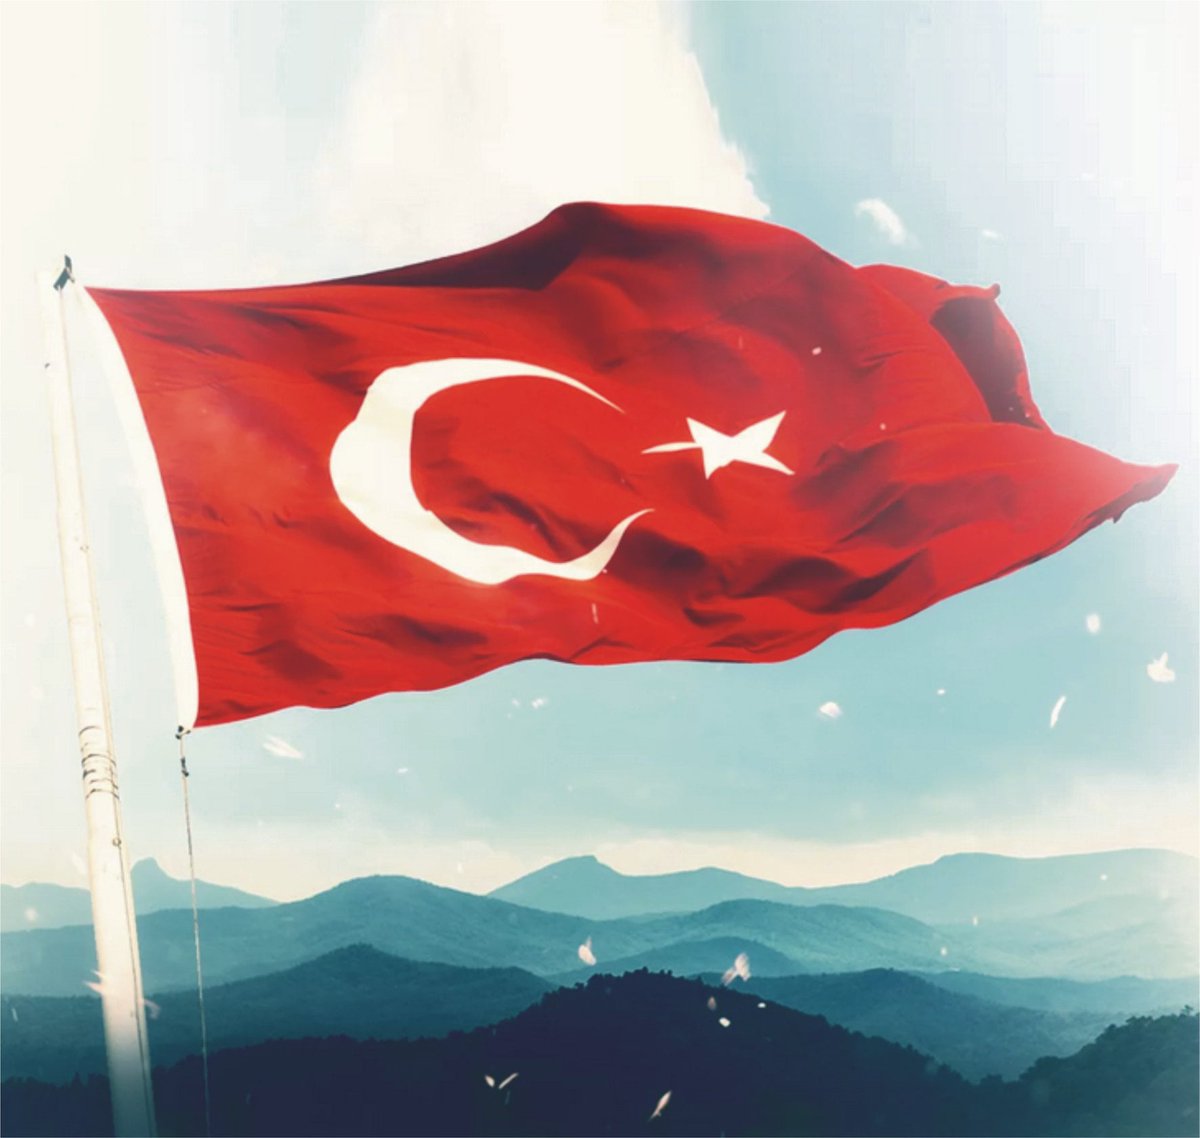 Ve elbet senin için söylenmiş türküler vardır
Uzak dağlarında ülkemin..
-----------------------
#AlaeddinÖzdenören